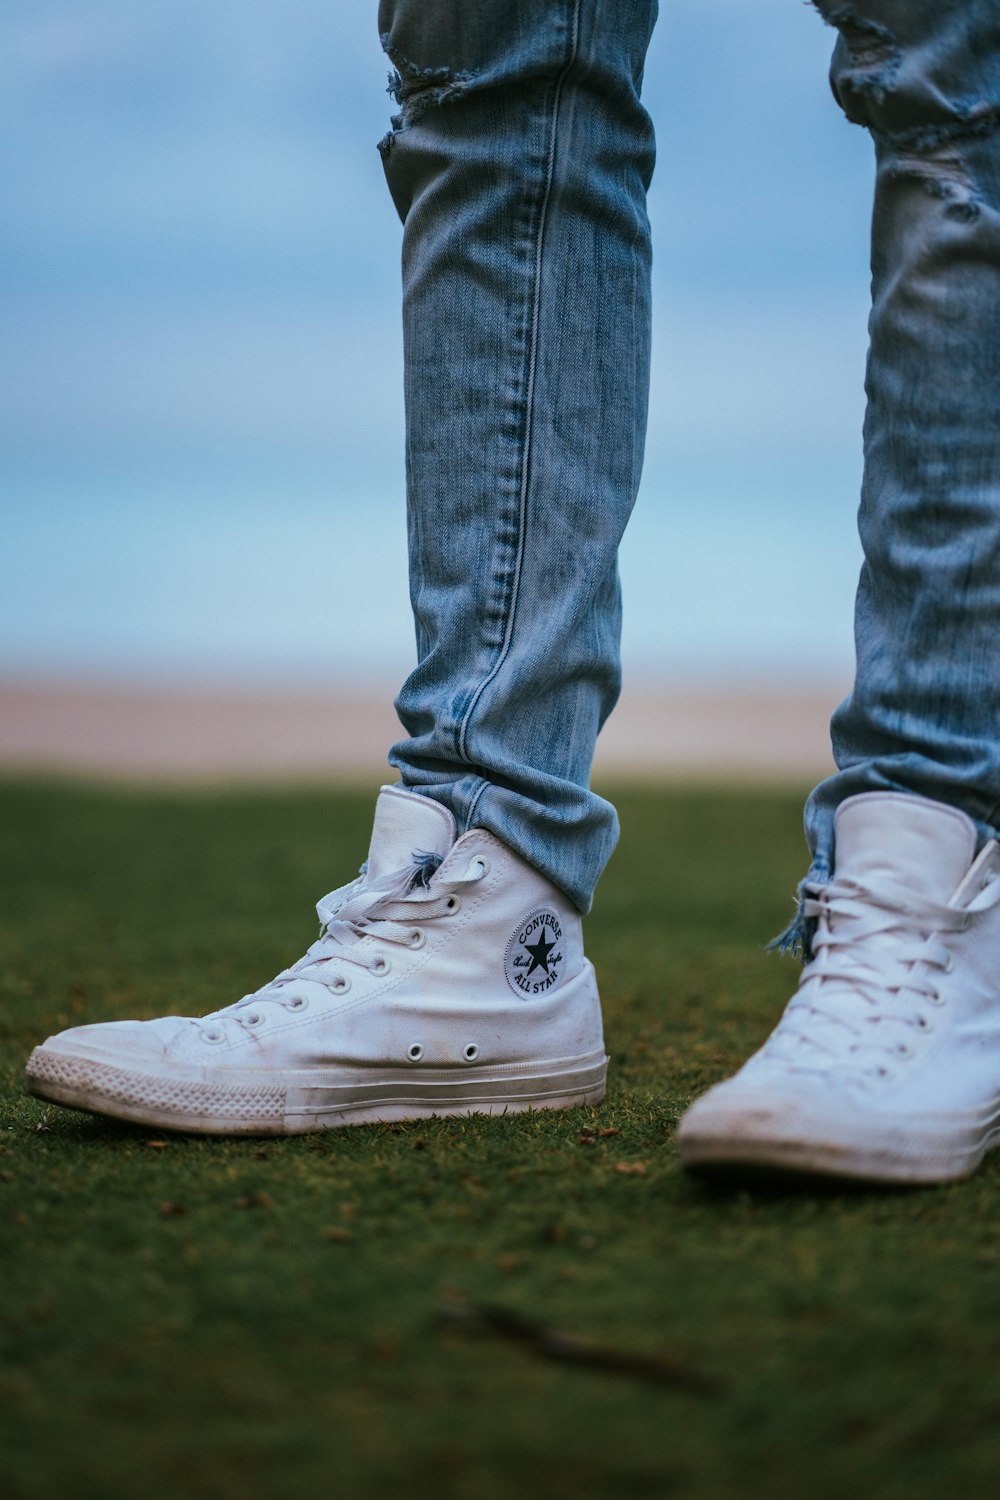 Hombre vestido con zapatillas converse blancas – Imagen Florida gratis en